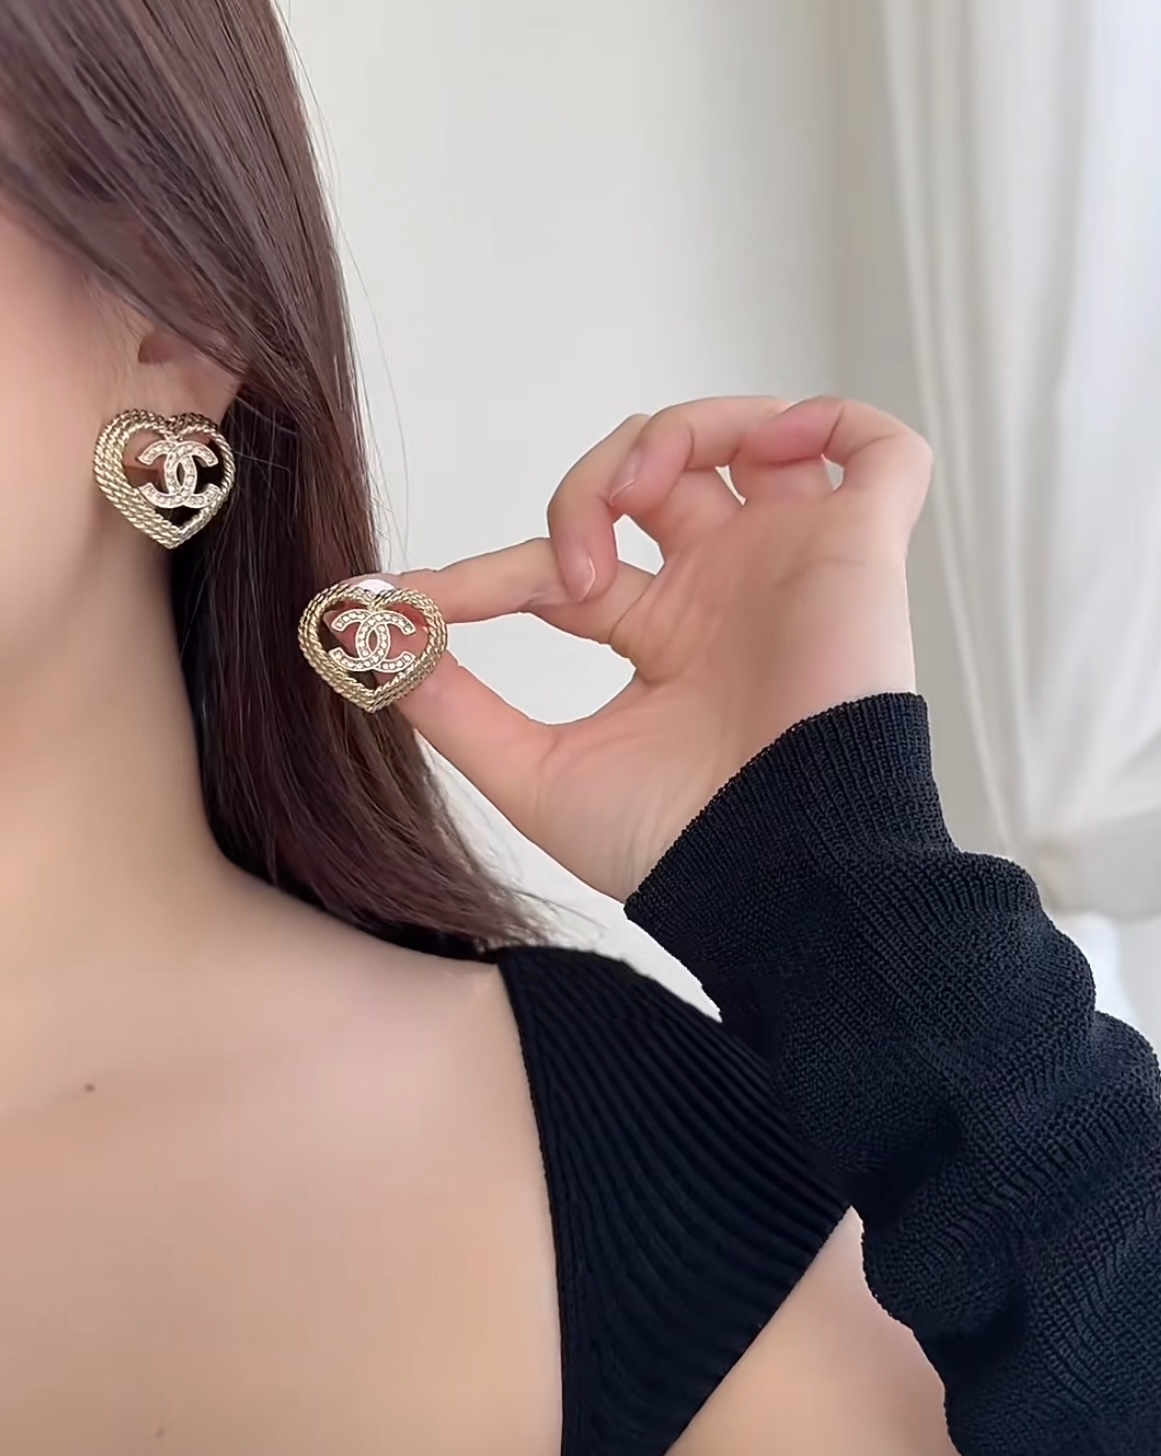 A976 Chanel hollow heart earrings